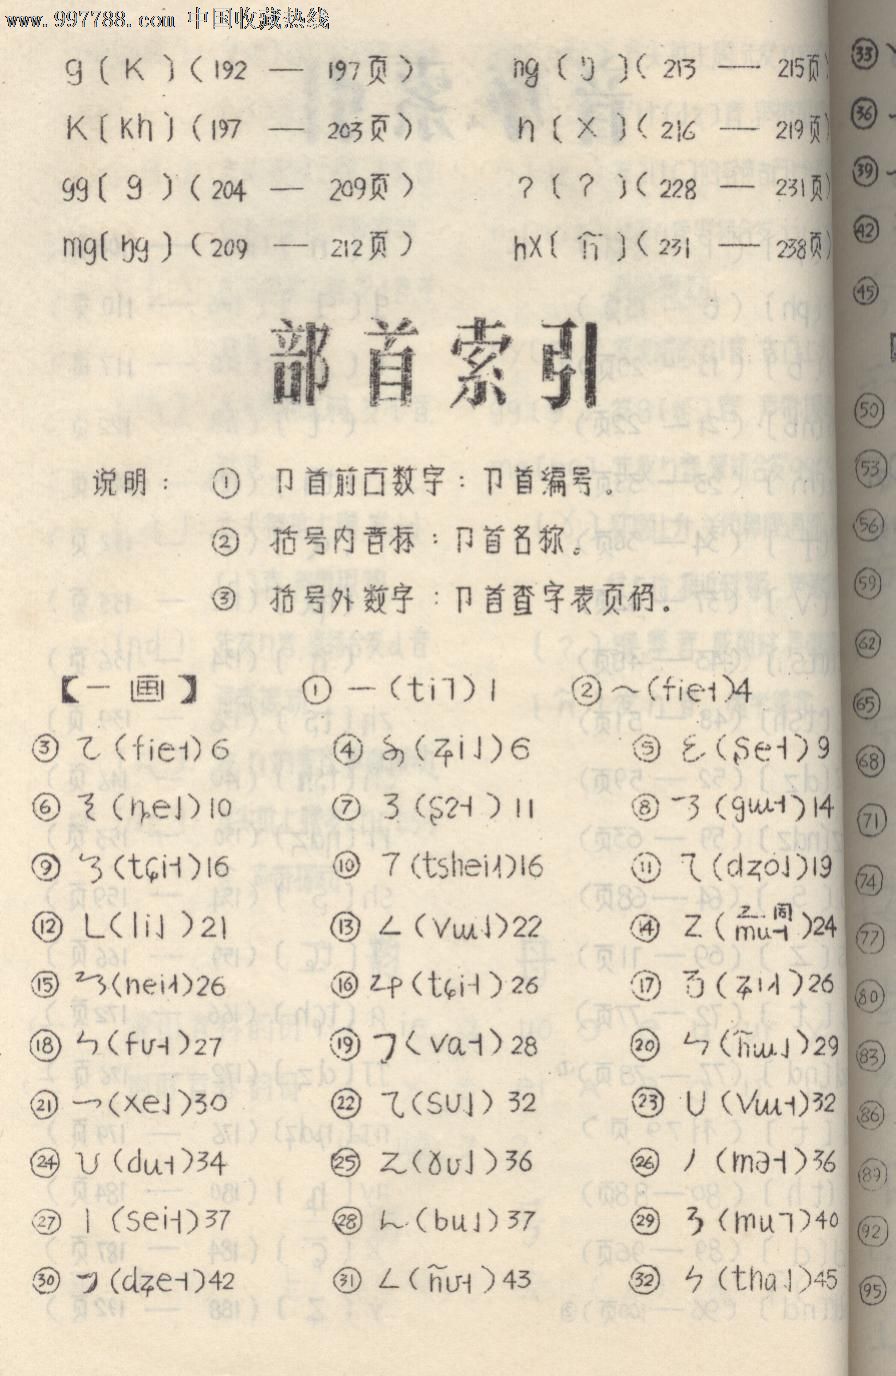 彝语拼音图片